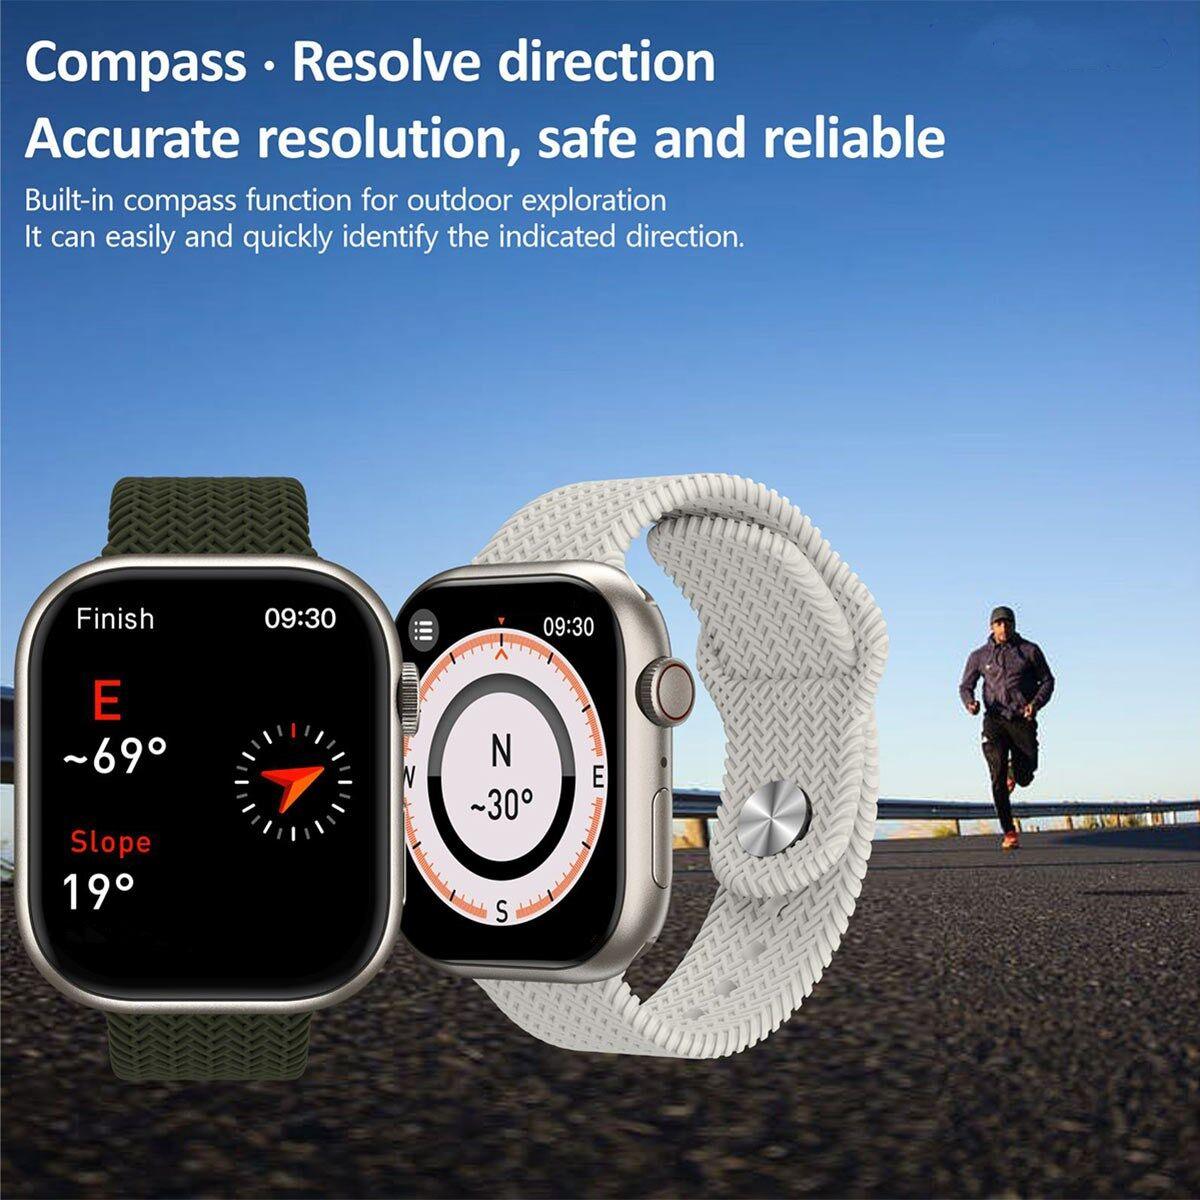 New Hk9 Pro Smart Watch 2.02 Quot Amoled Screen Series 9 Compass Nfc Bluetooth Call Men Sport Smartwatch (Black)